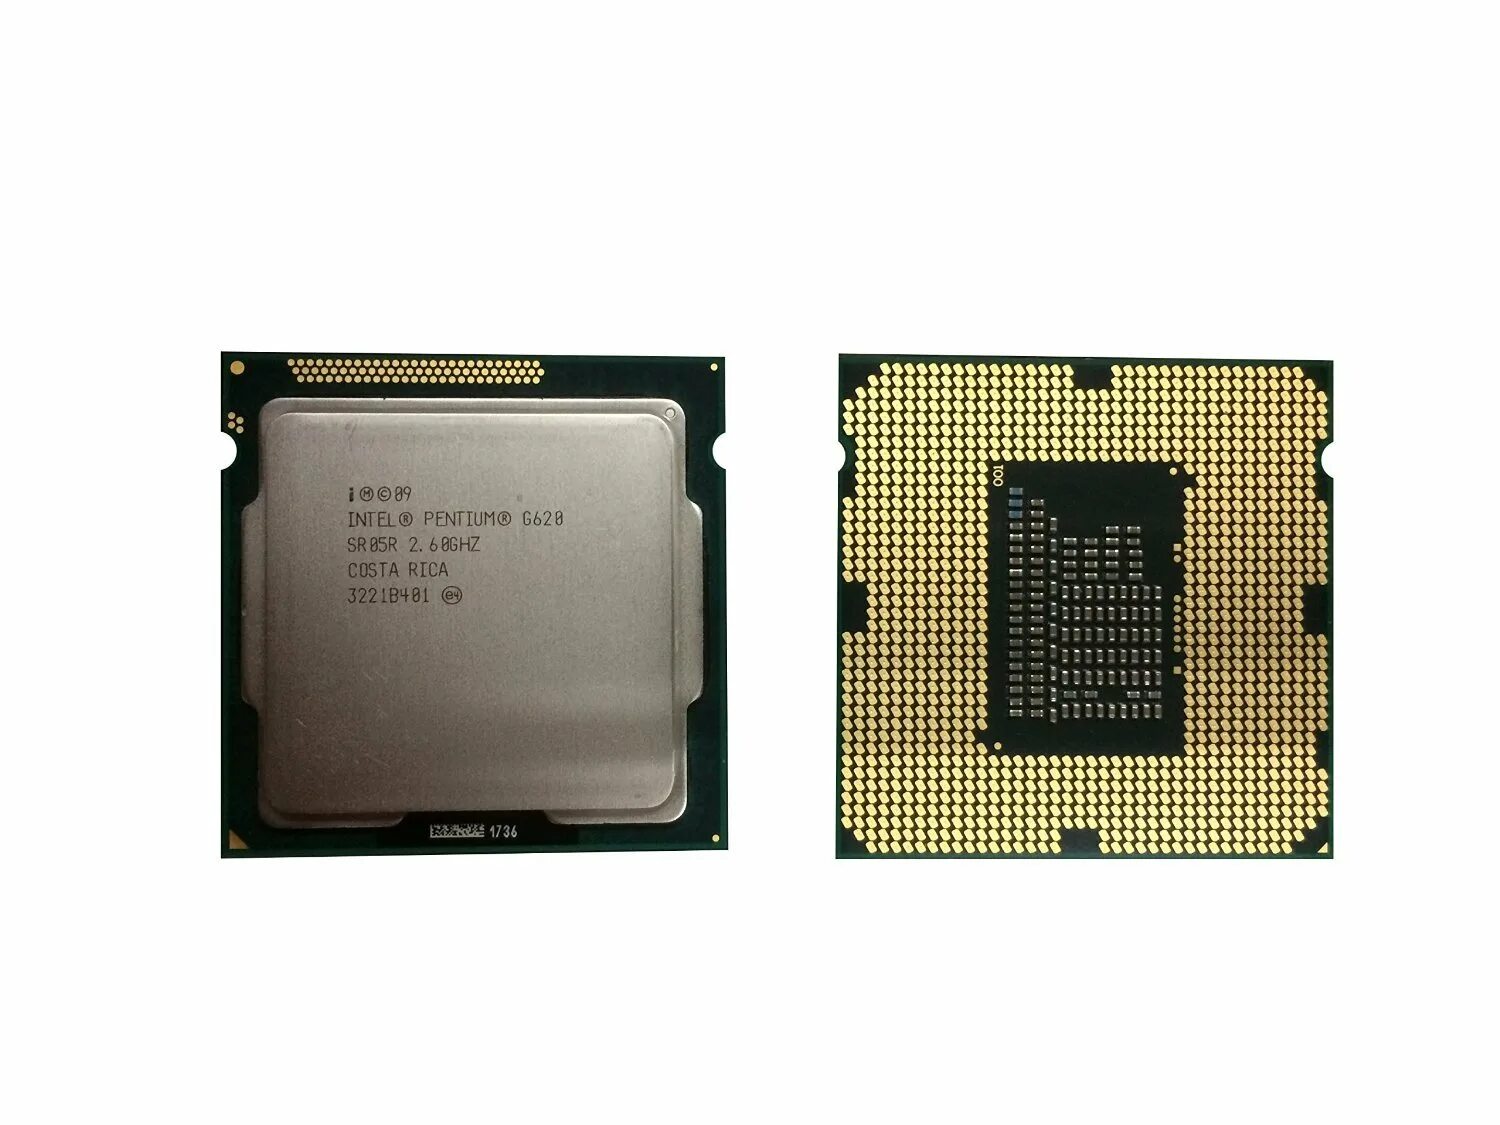 Intel g4620. Intel Pentium g620 2.60GHZ. Intel(r) Pentium(r) CPU g620. Intel(r) Pentium CPU g620 процессор. Intel Pentium g620 2.60GHZ сокет 1155.